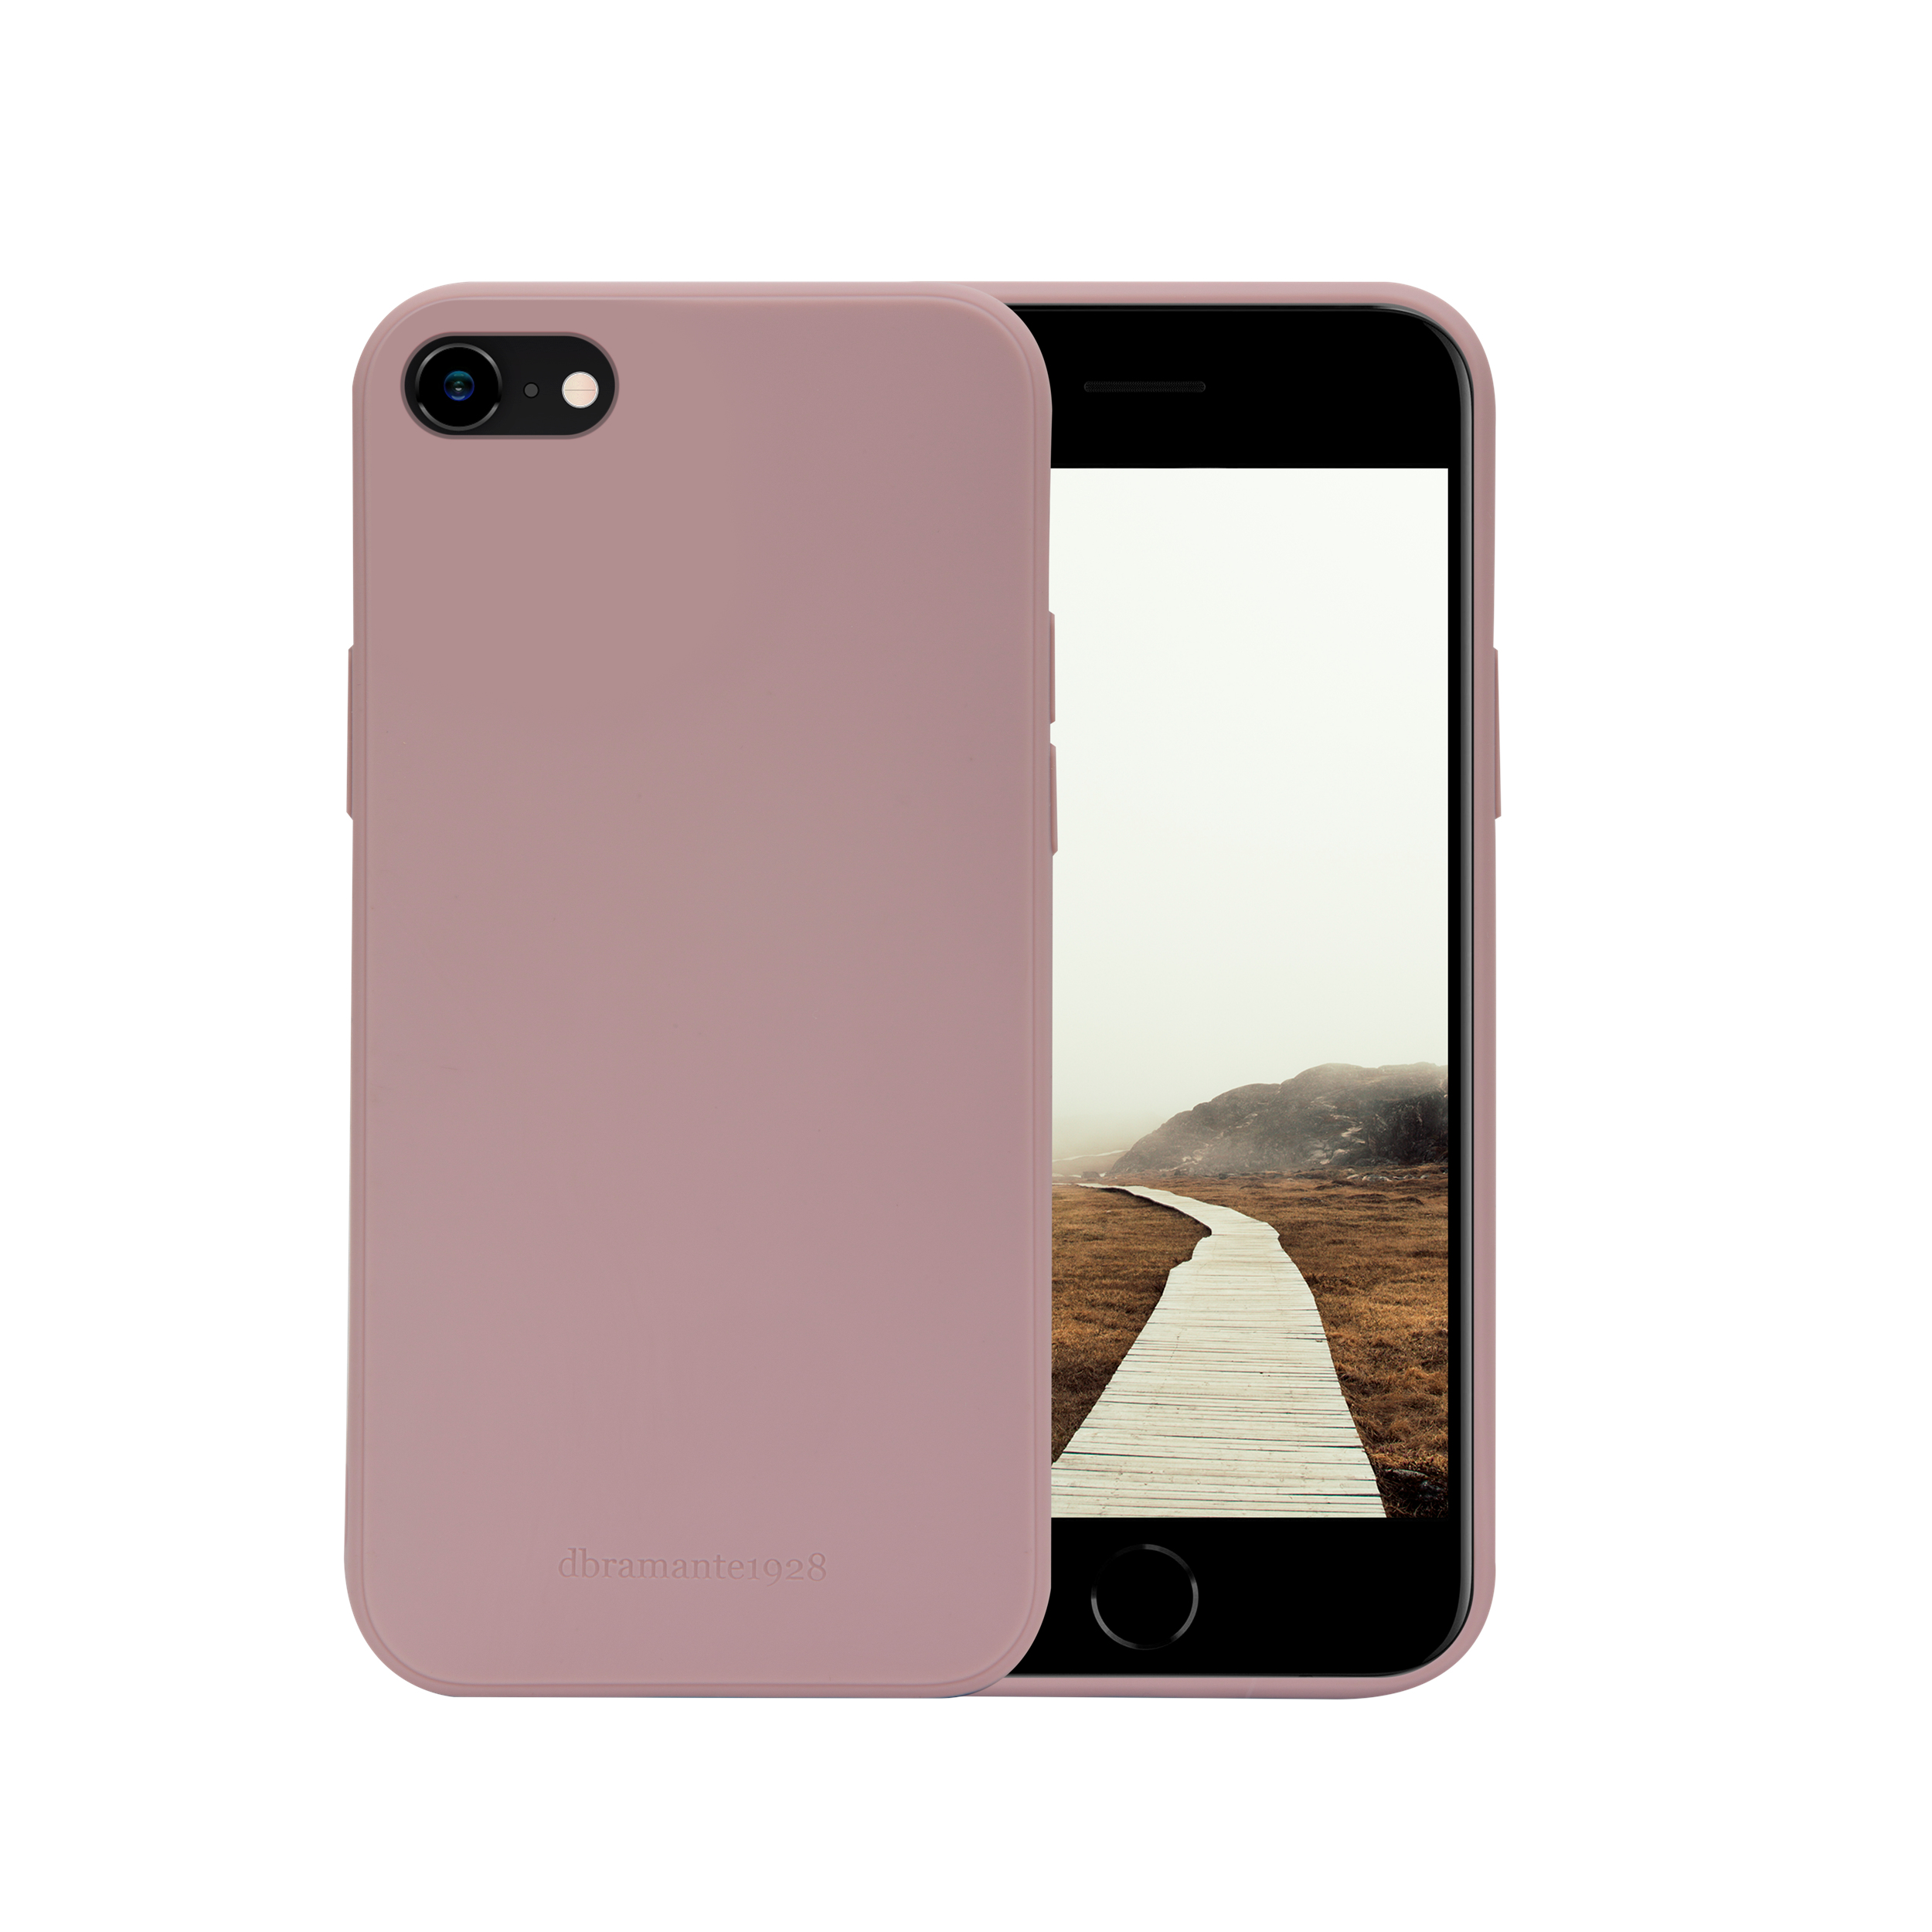 dbramante1928 Greenland - Hintere Abdeckung für Mobiltelefon - Snap-on - 100 % recycelter Kunststoff - rosa sandfarben - für Apple iPhone 7, 8, SE (2. Generation)